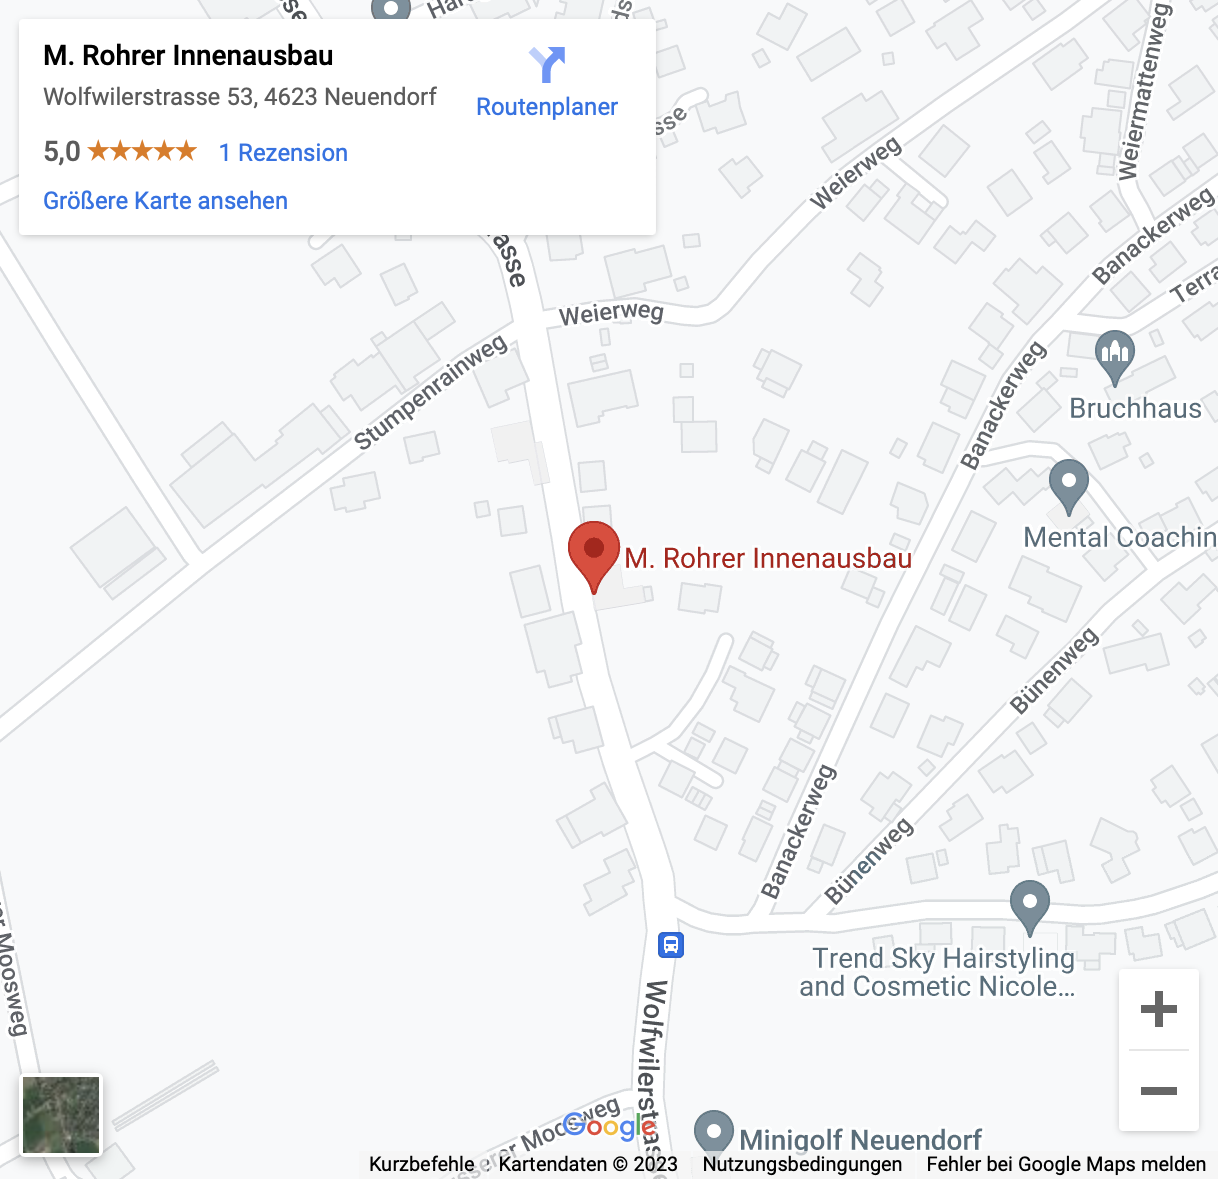 rohrer-innenausbau_maps1